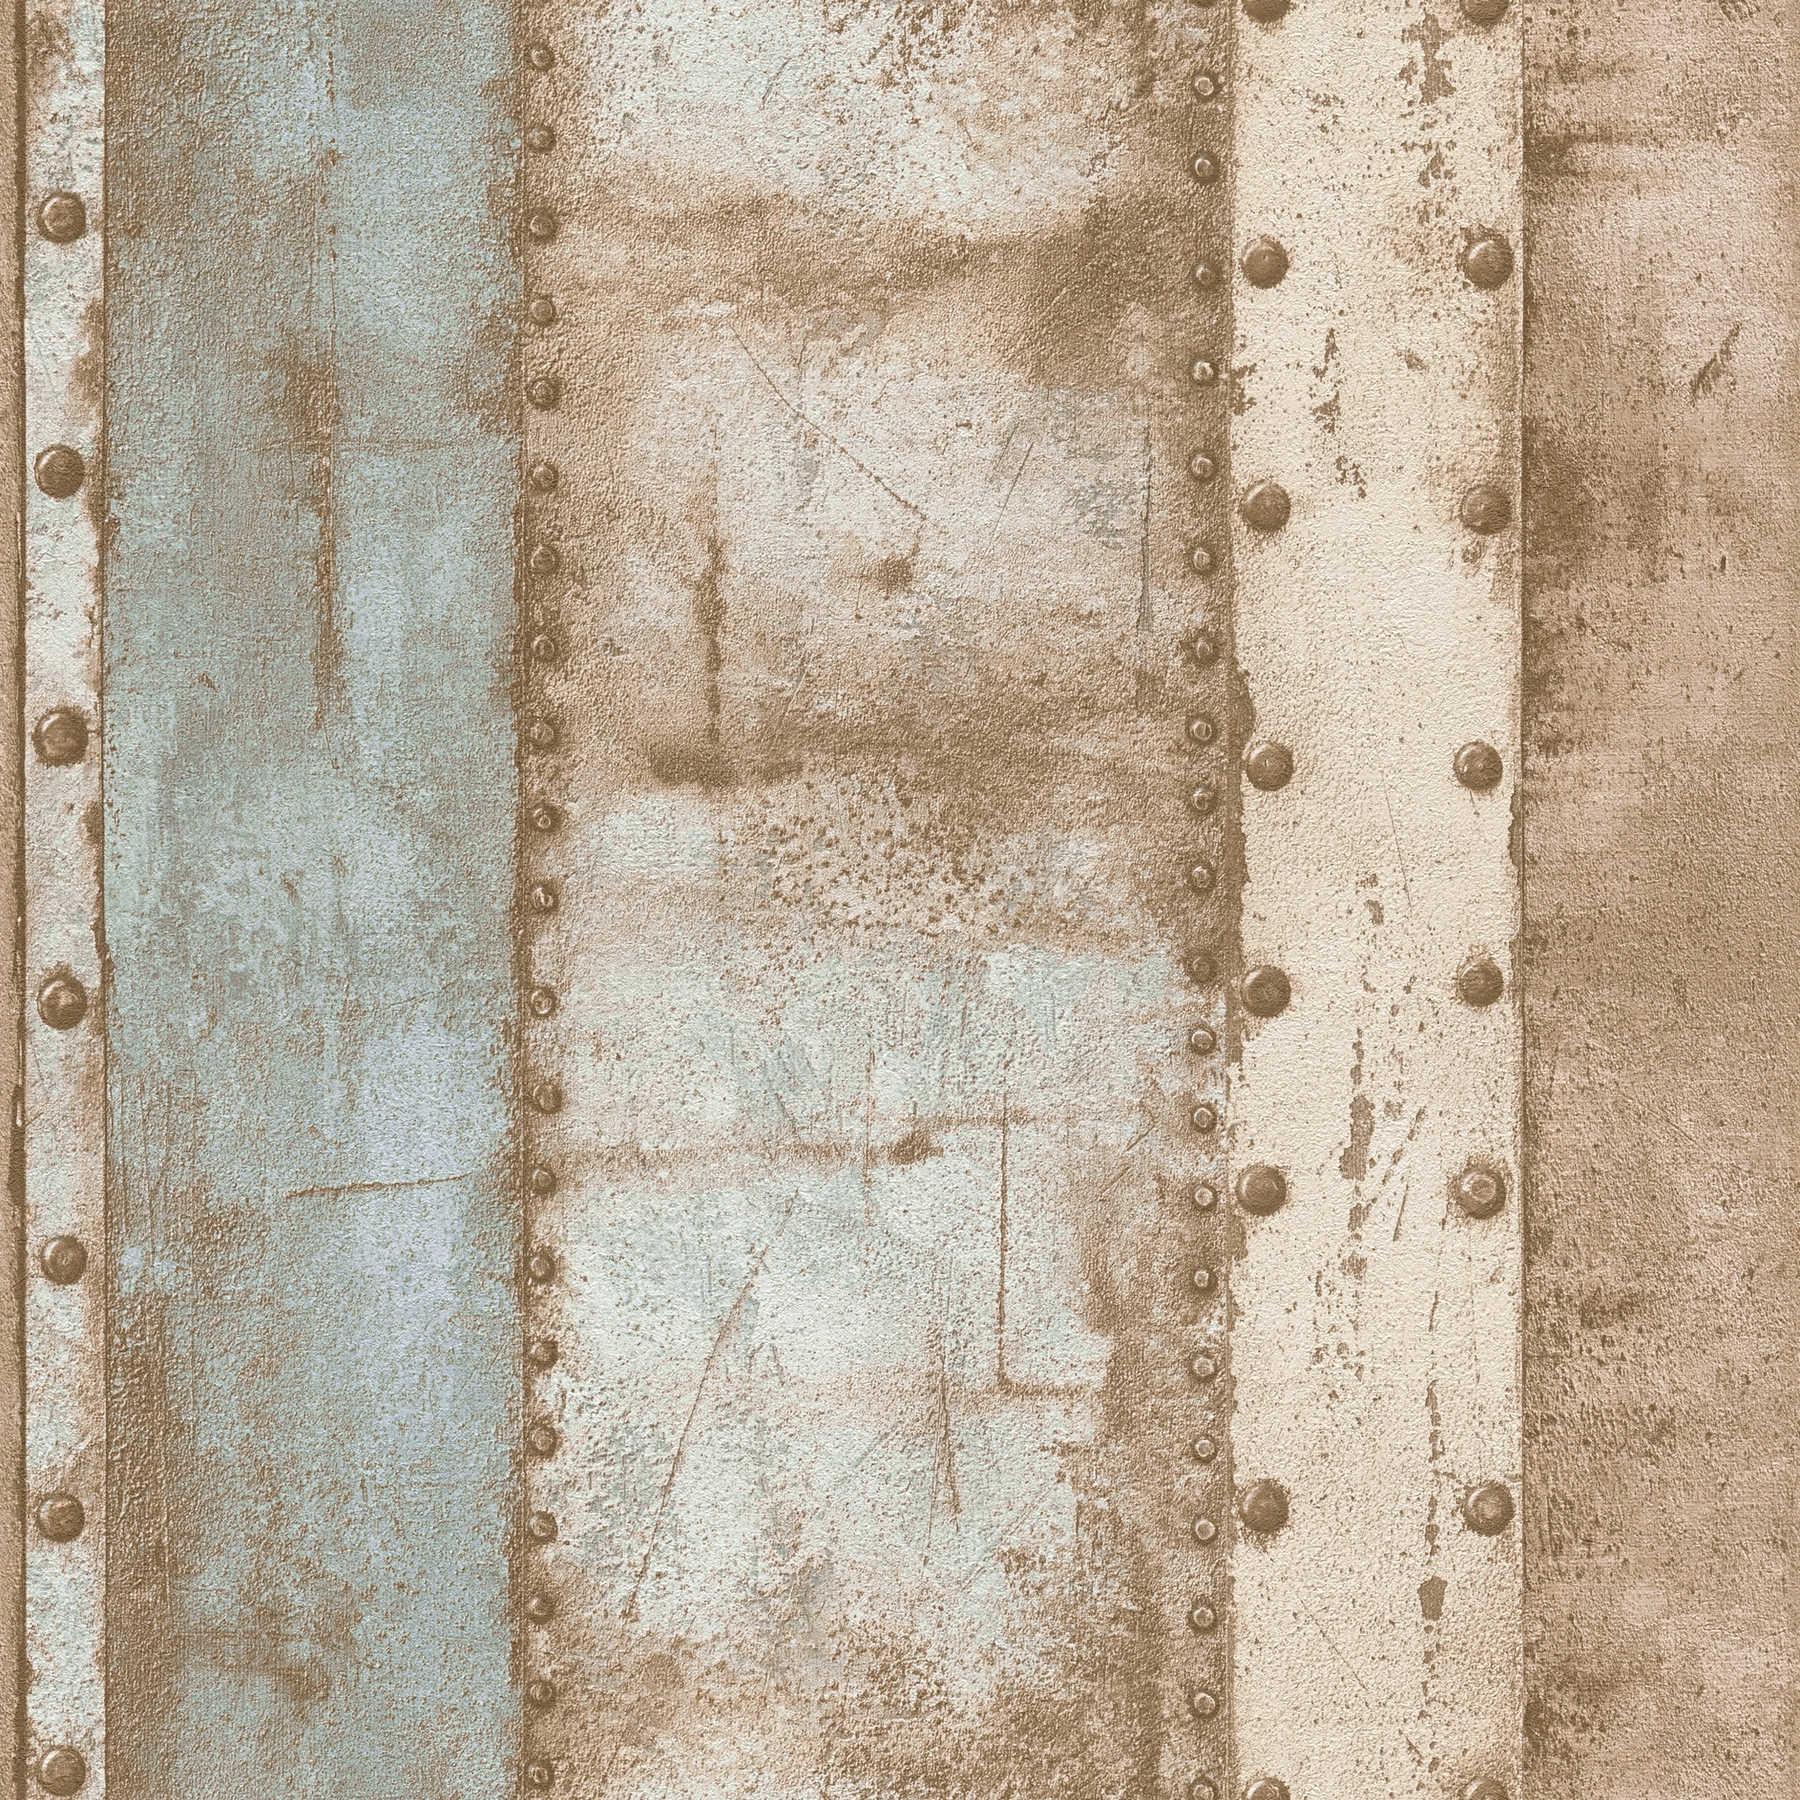 Wallpaper metal look, industrial style & used look - beige, blue, brown
